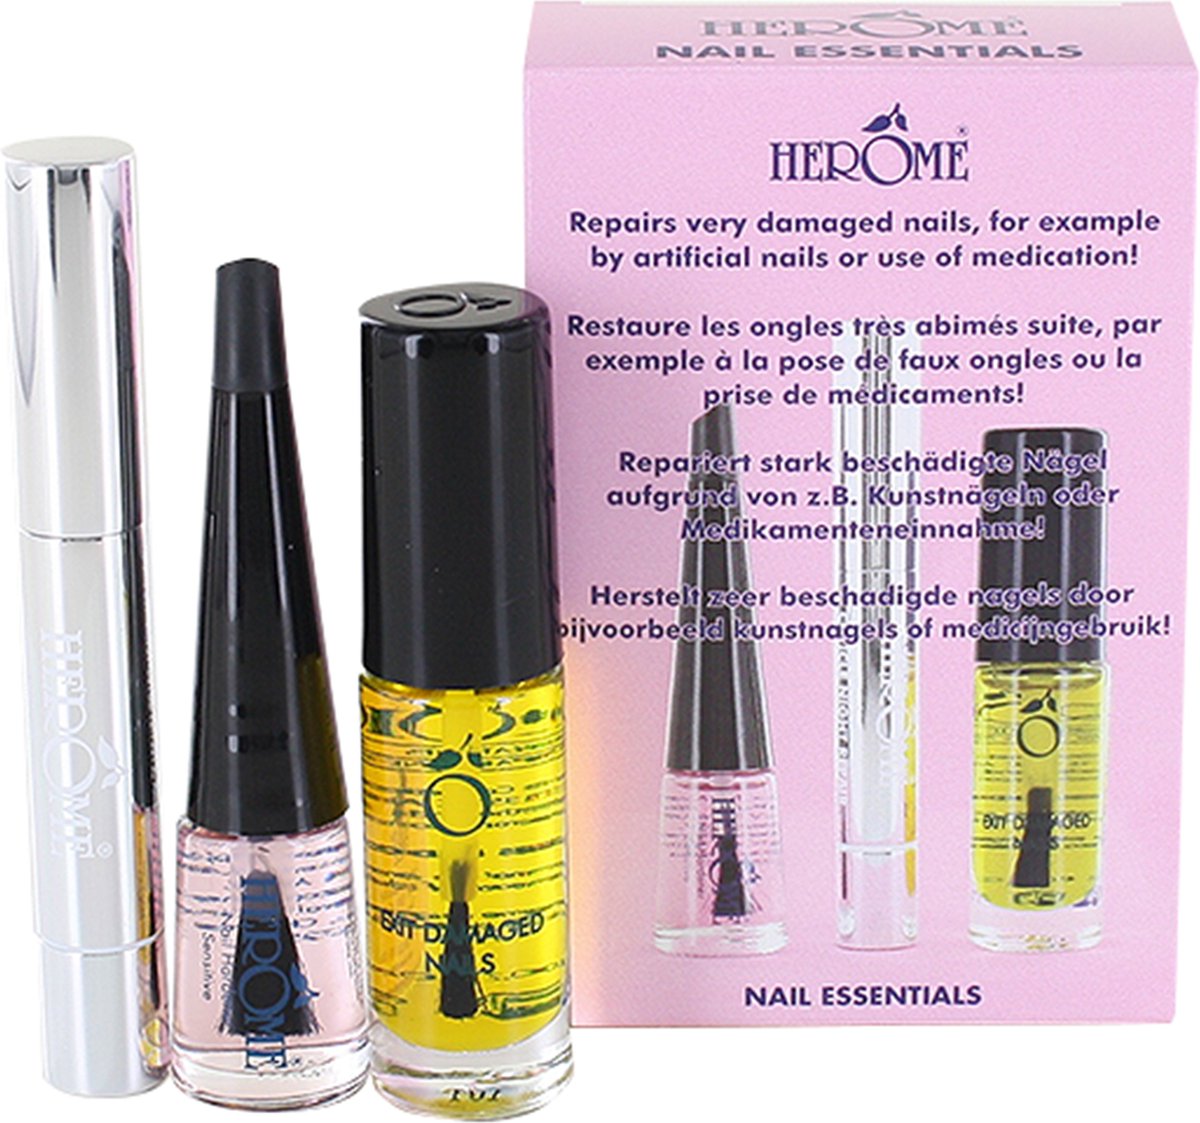 Herome 3 in 1 Manicure met Nagelriemolie, Nagelriemcrème en Nagelverharder - Nagelverzorging voor Beschadigde Nagels - Herome